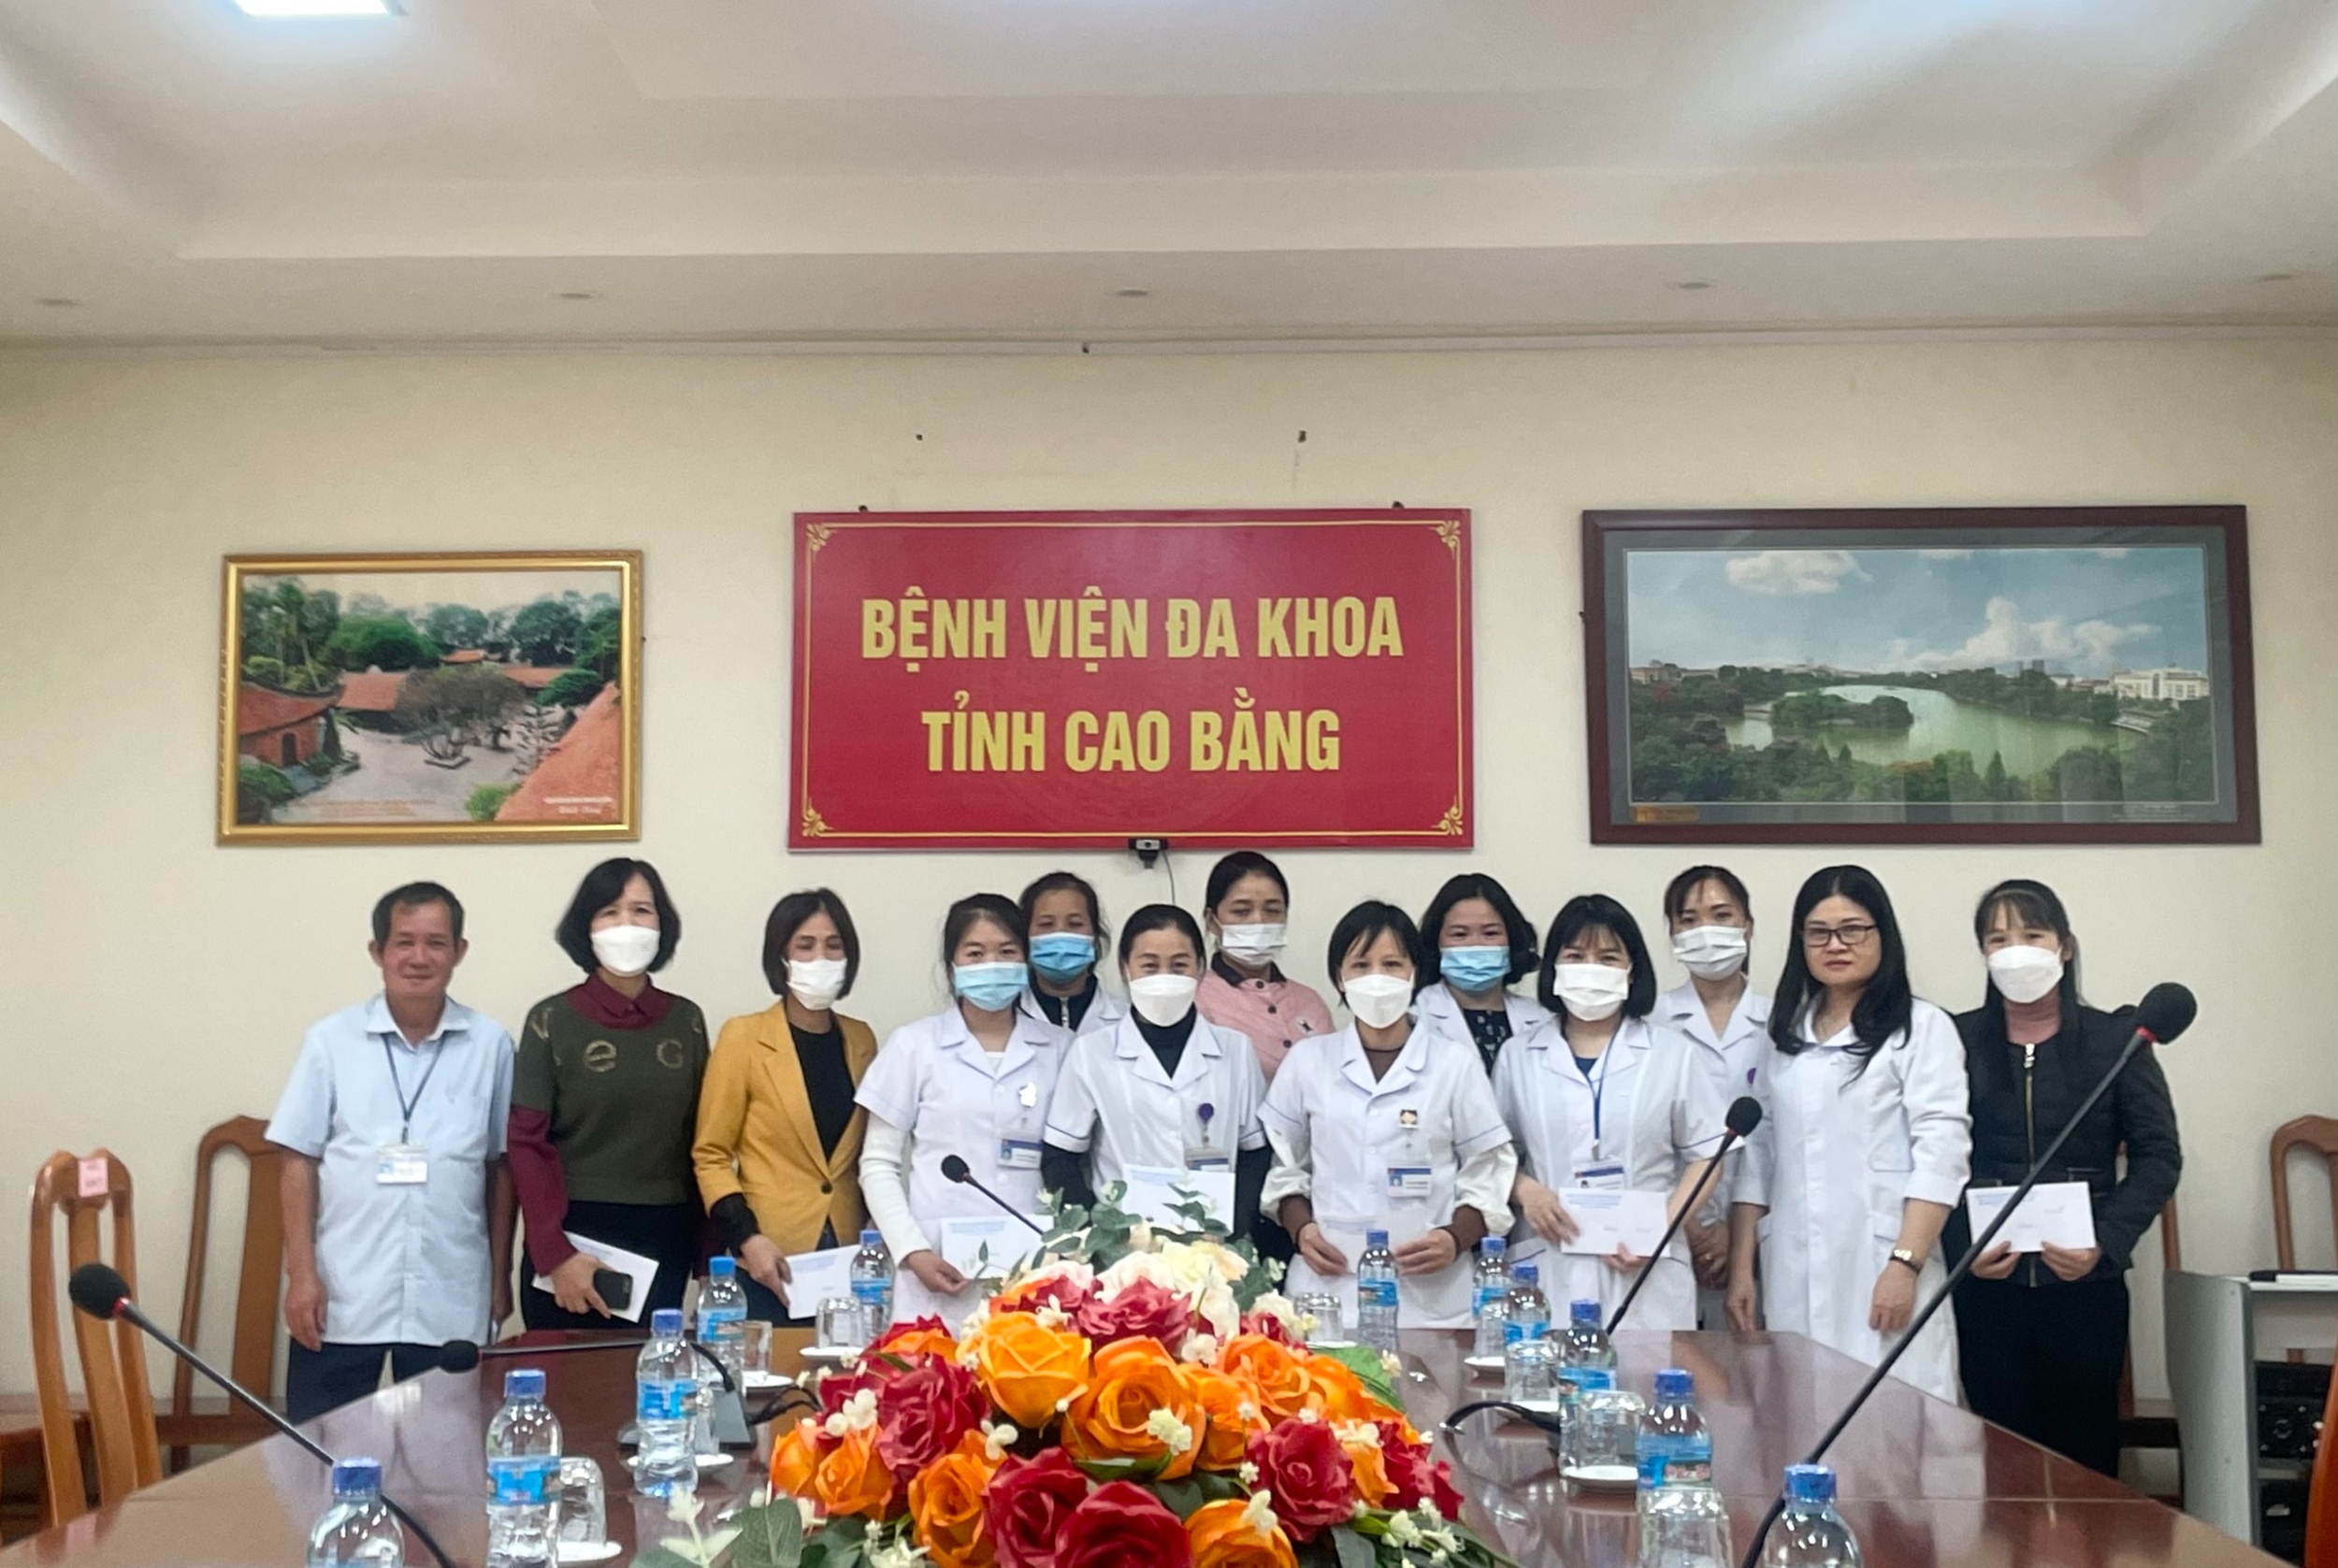 Công đoàn BVĐK tỉnh Cao Bằng: Tặng quà cho đoàn viên nữ có hoàn cảnh khó khăn nhân dịp Ngày phụ nữ Việt Nam 20/10.